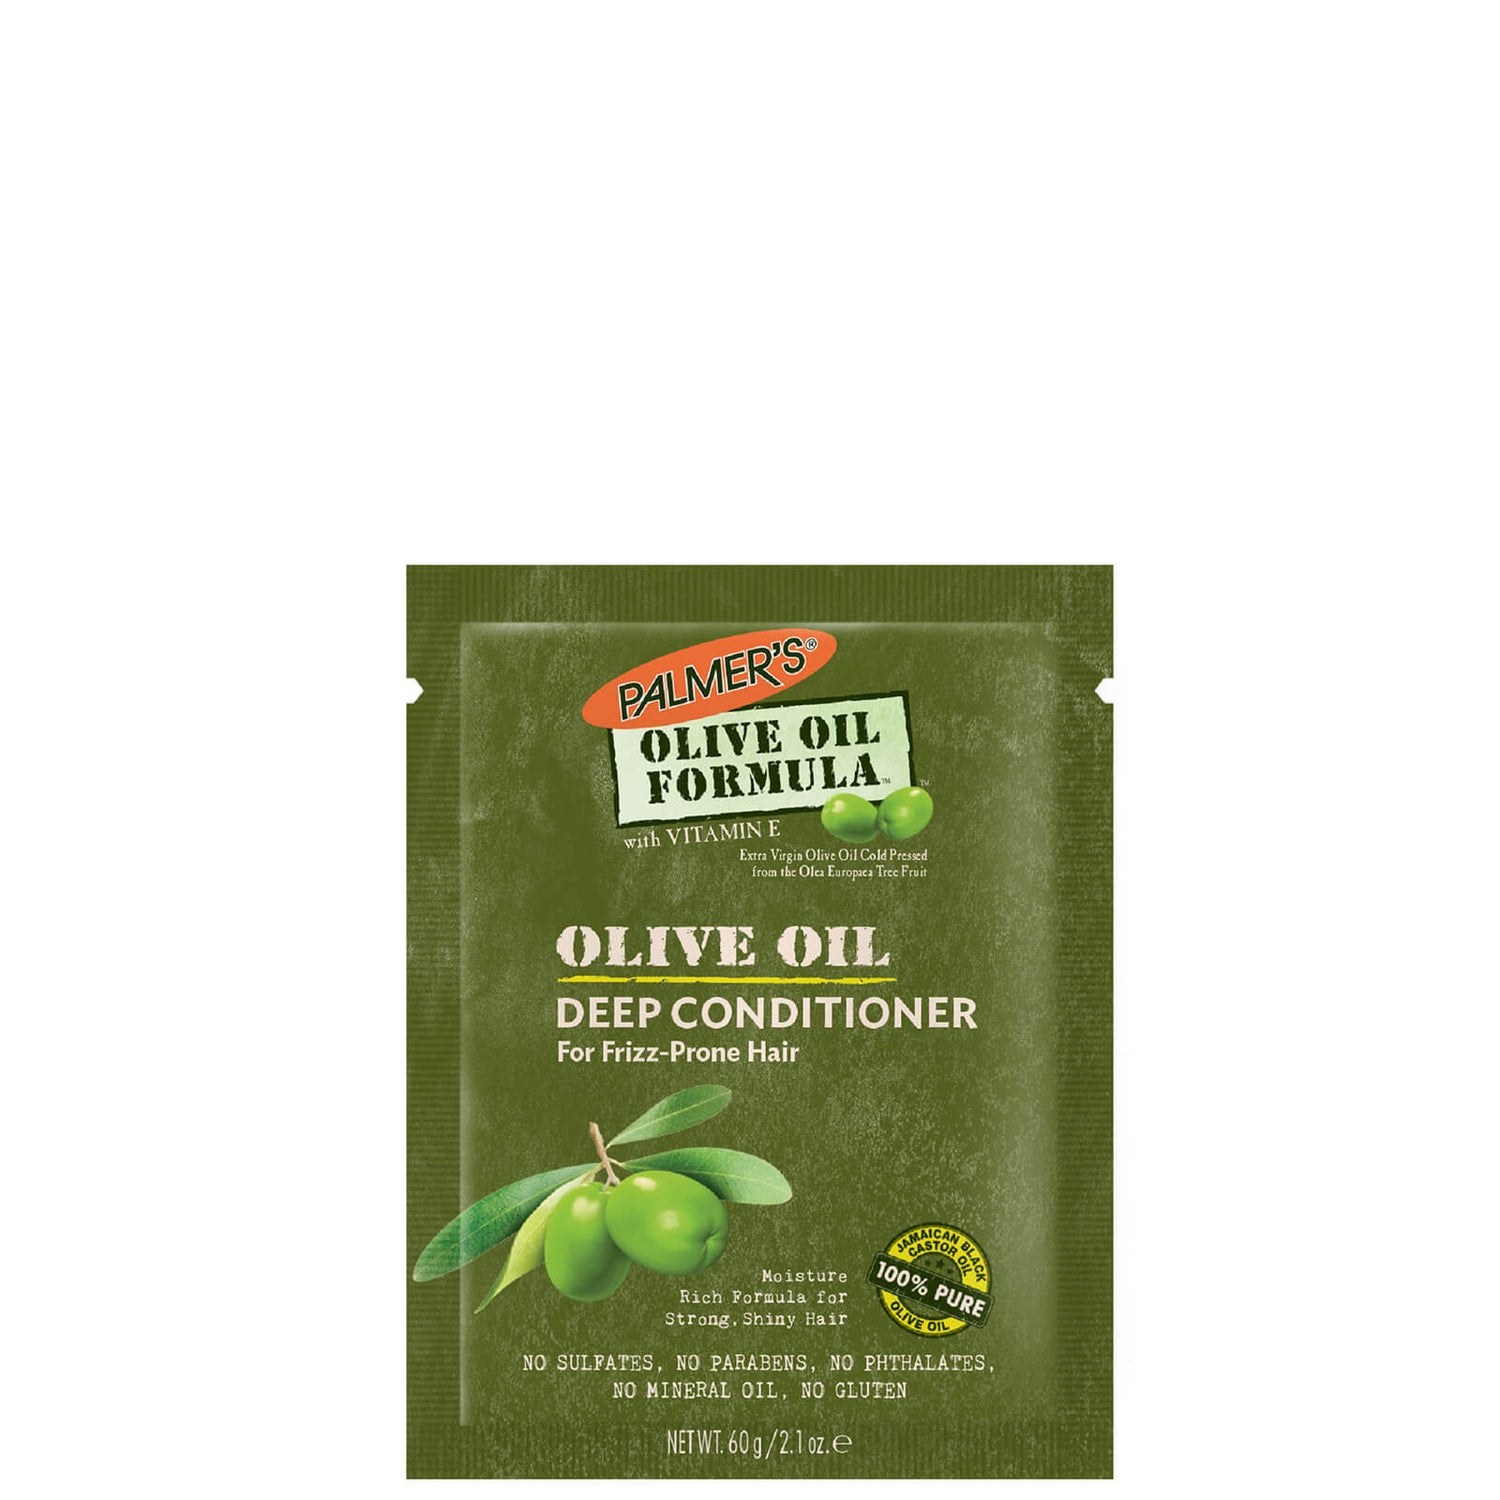 Palmer's Olive Oil Formula Olive Oil Deep Conditioner Pack 60g